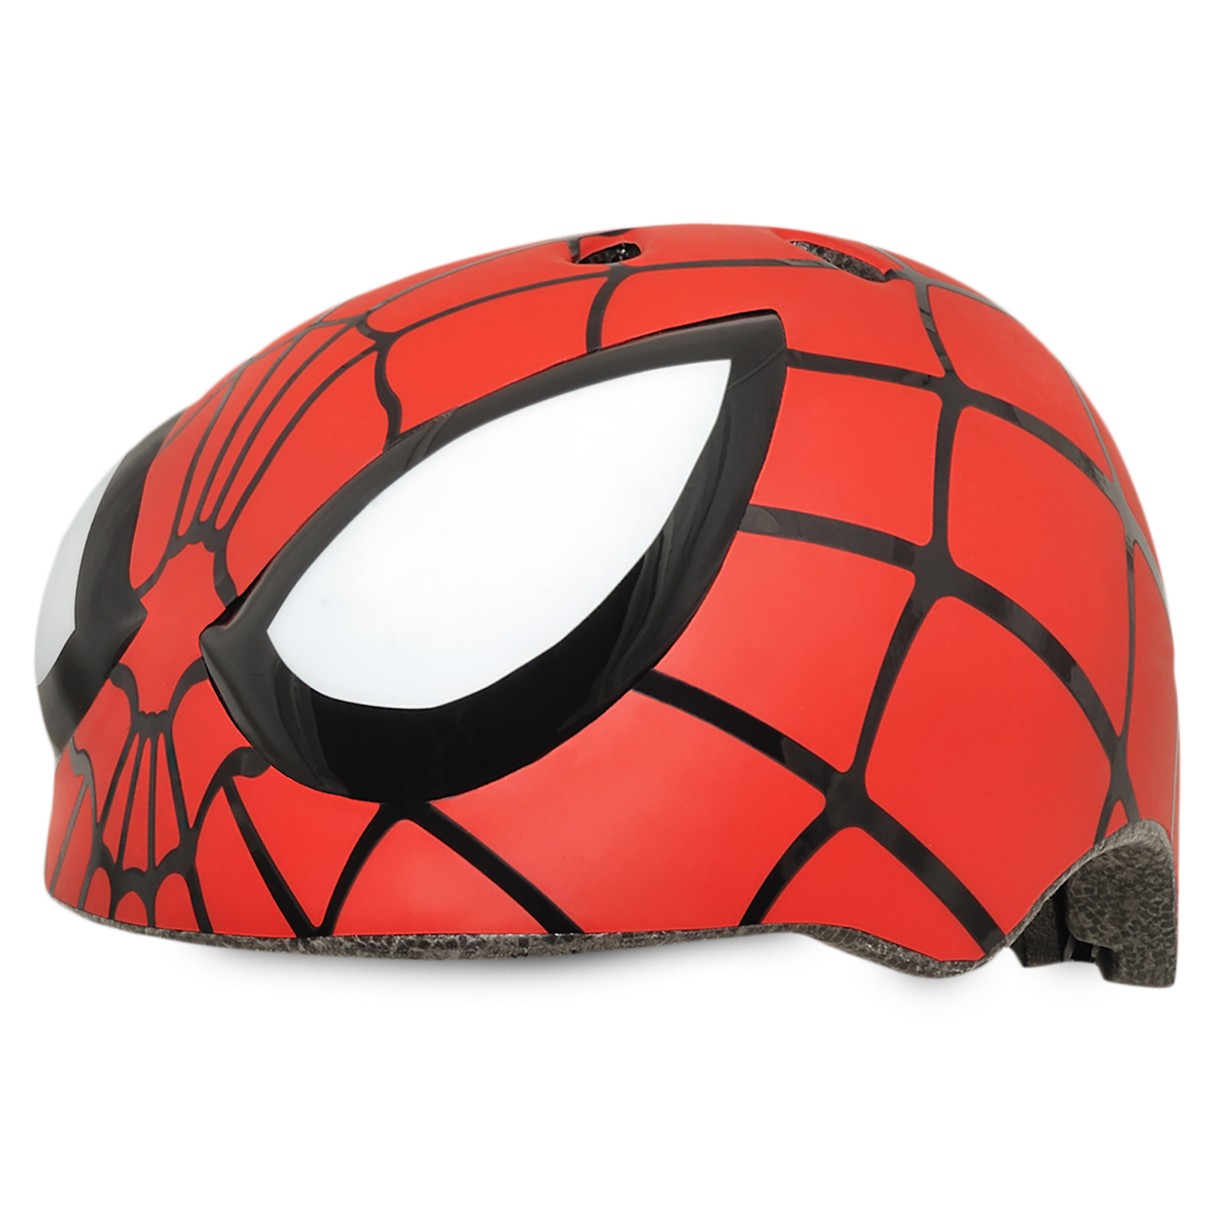 Spider-Man Bike Helmet for Kids